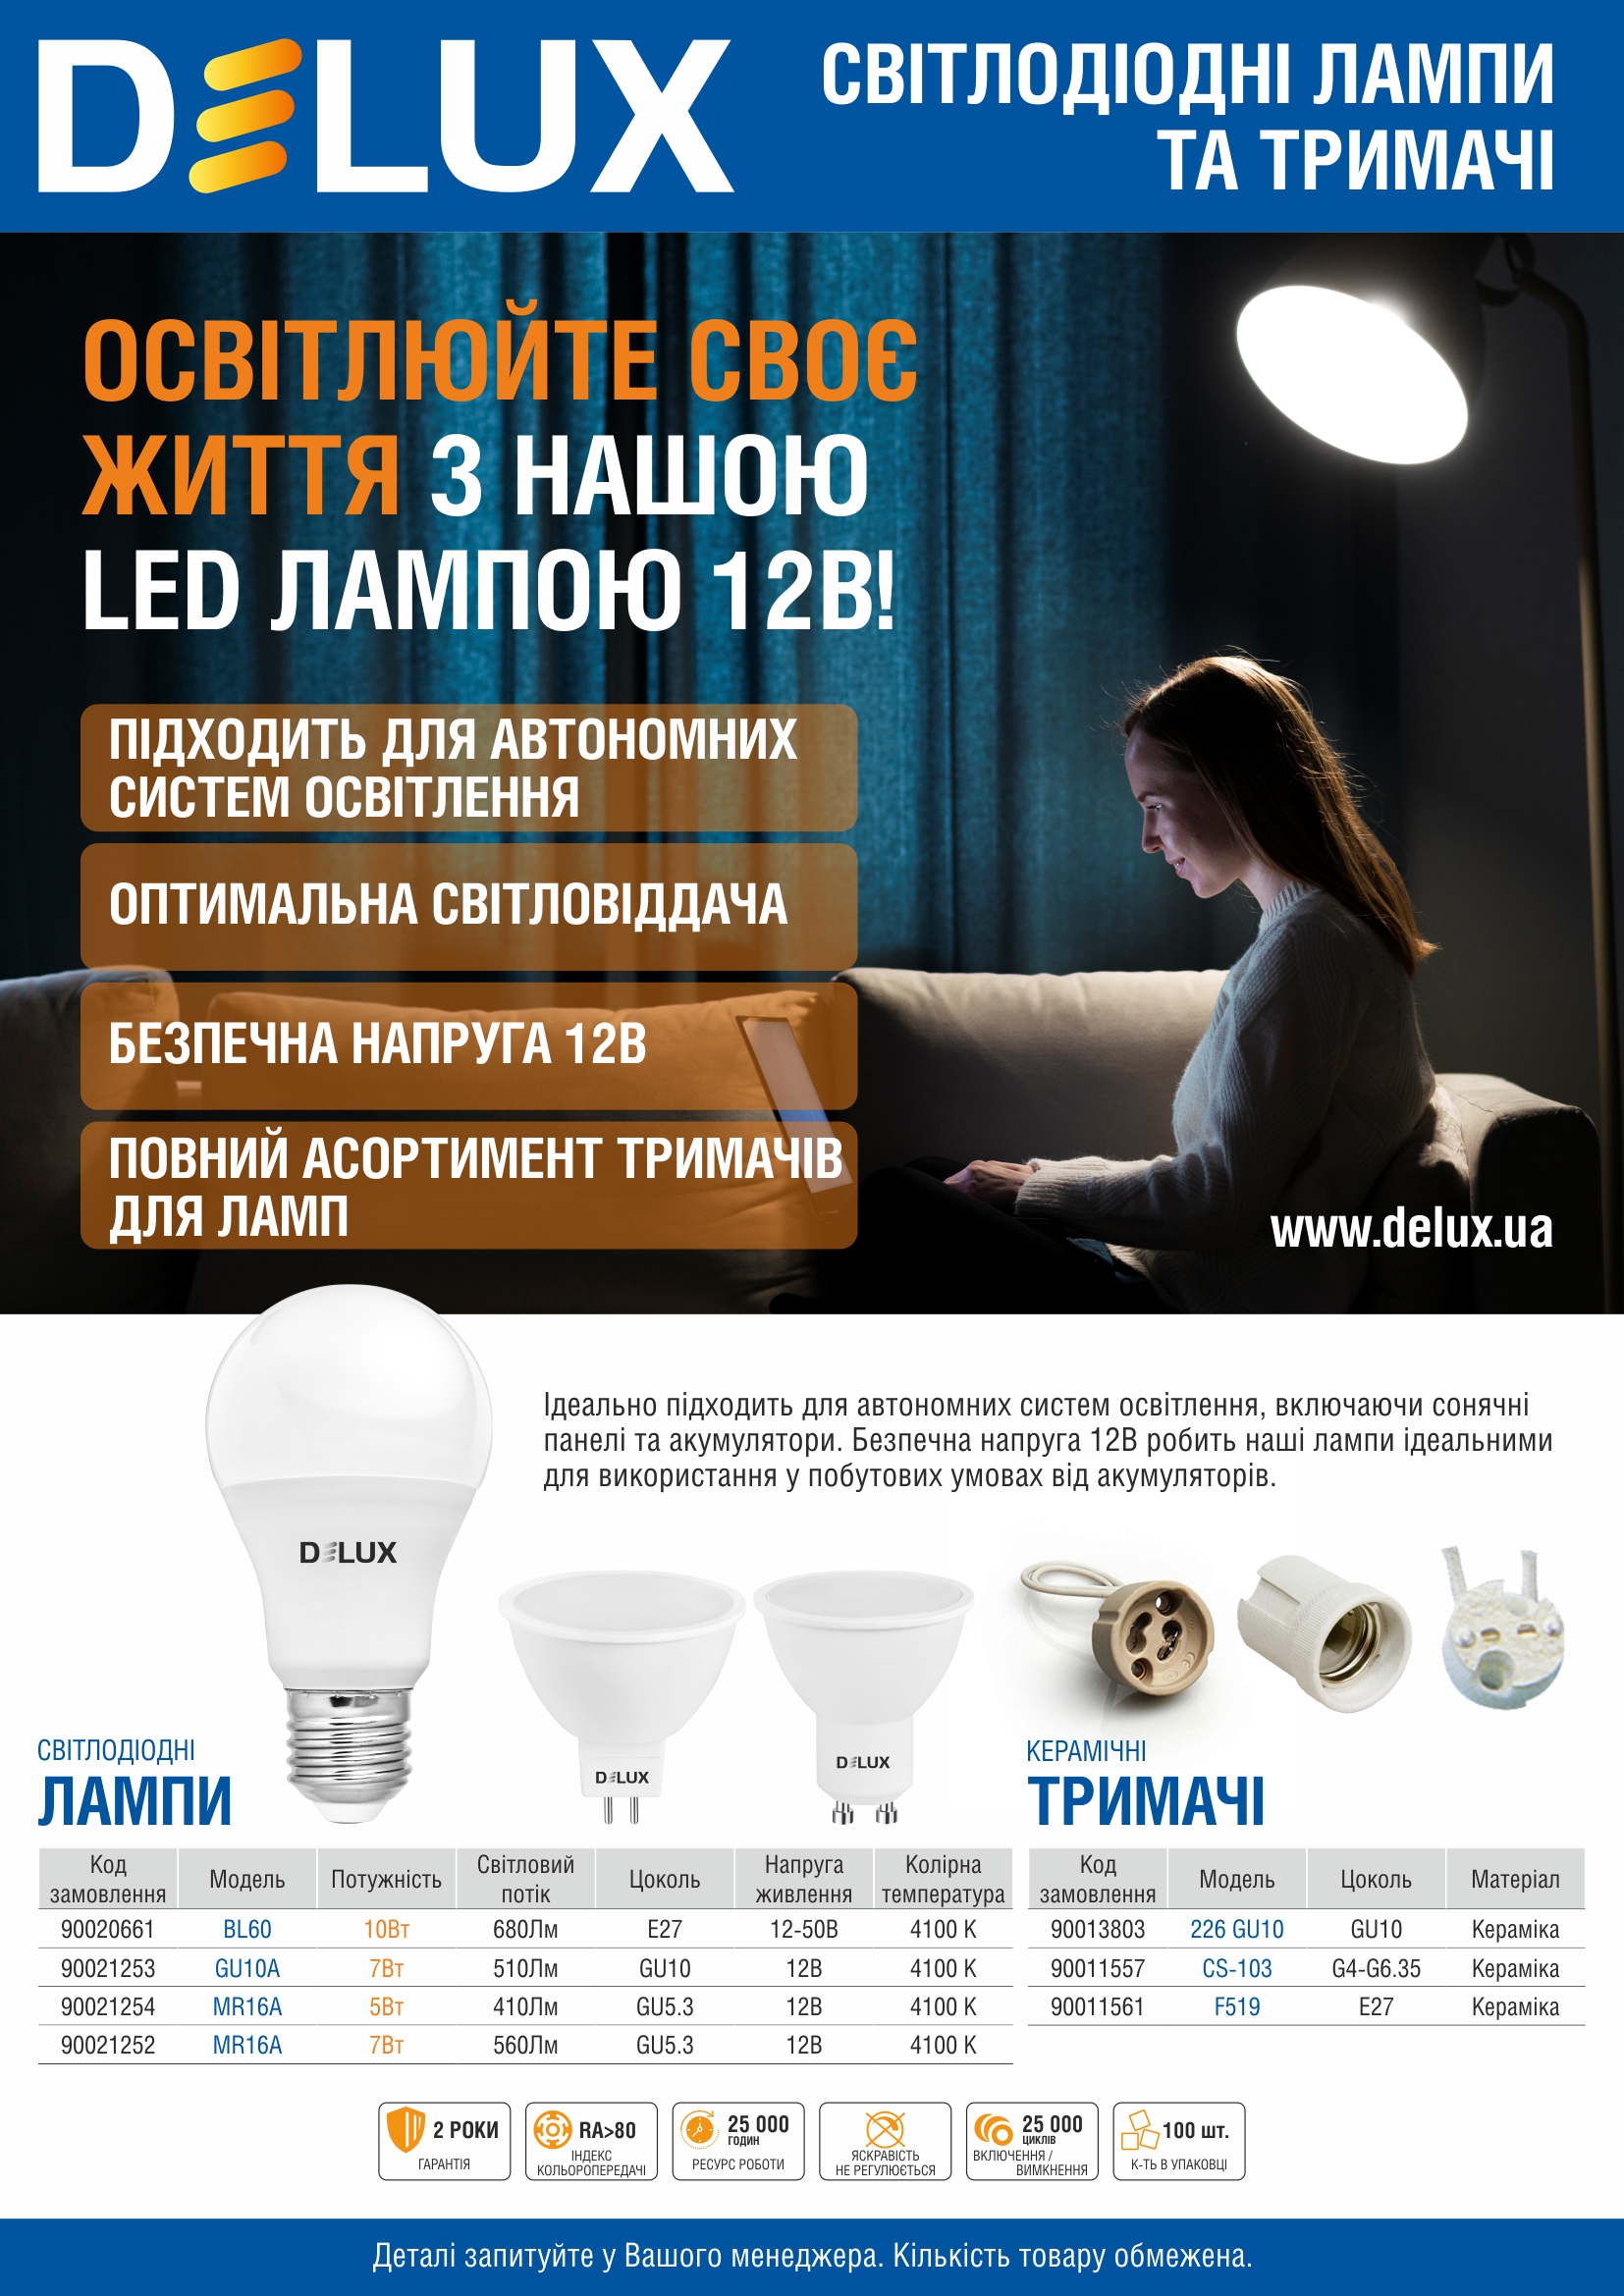 LED лампи 12В для автономних систем освітлення